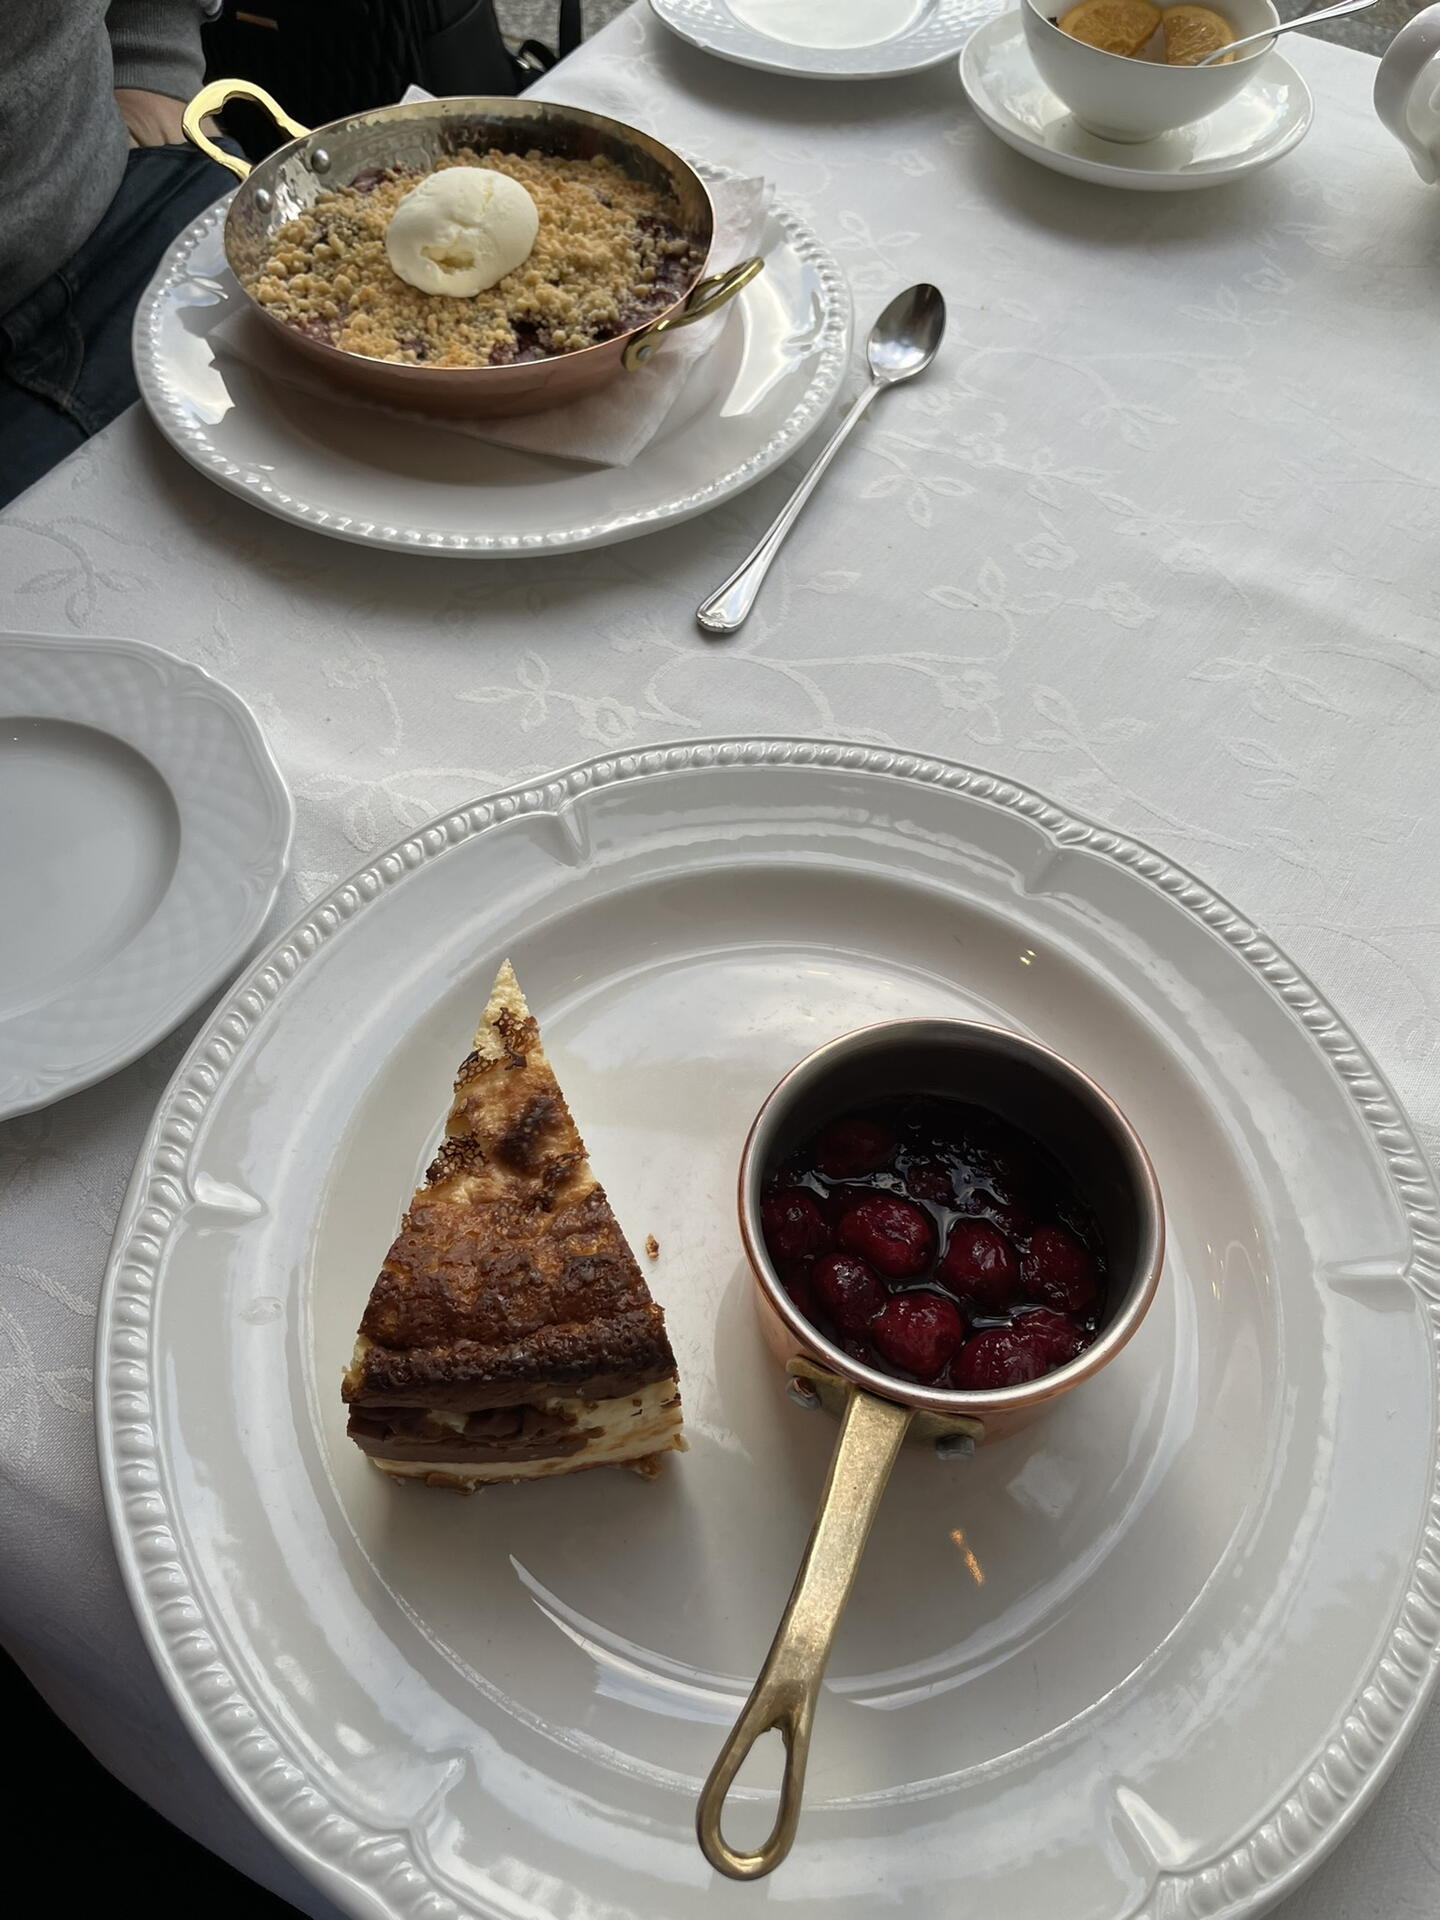 Restaurace Wesele - dezert Cheesecake s třešňovým předlivem a horké švestky s drobenkou a zmrzlinou